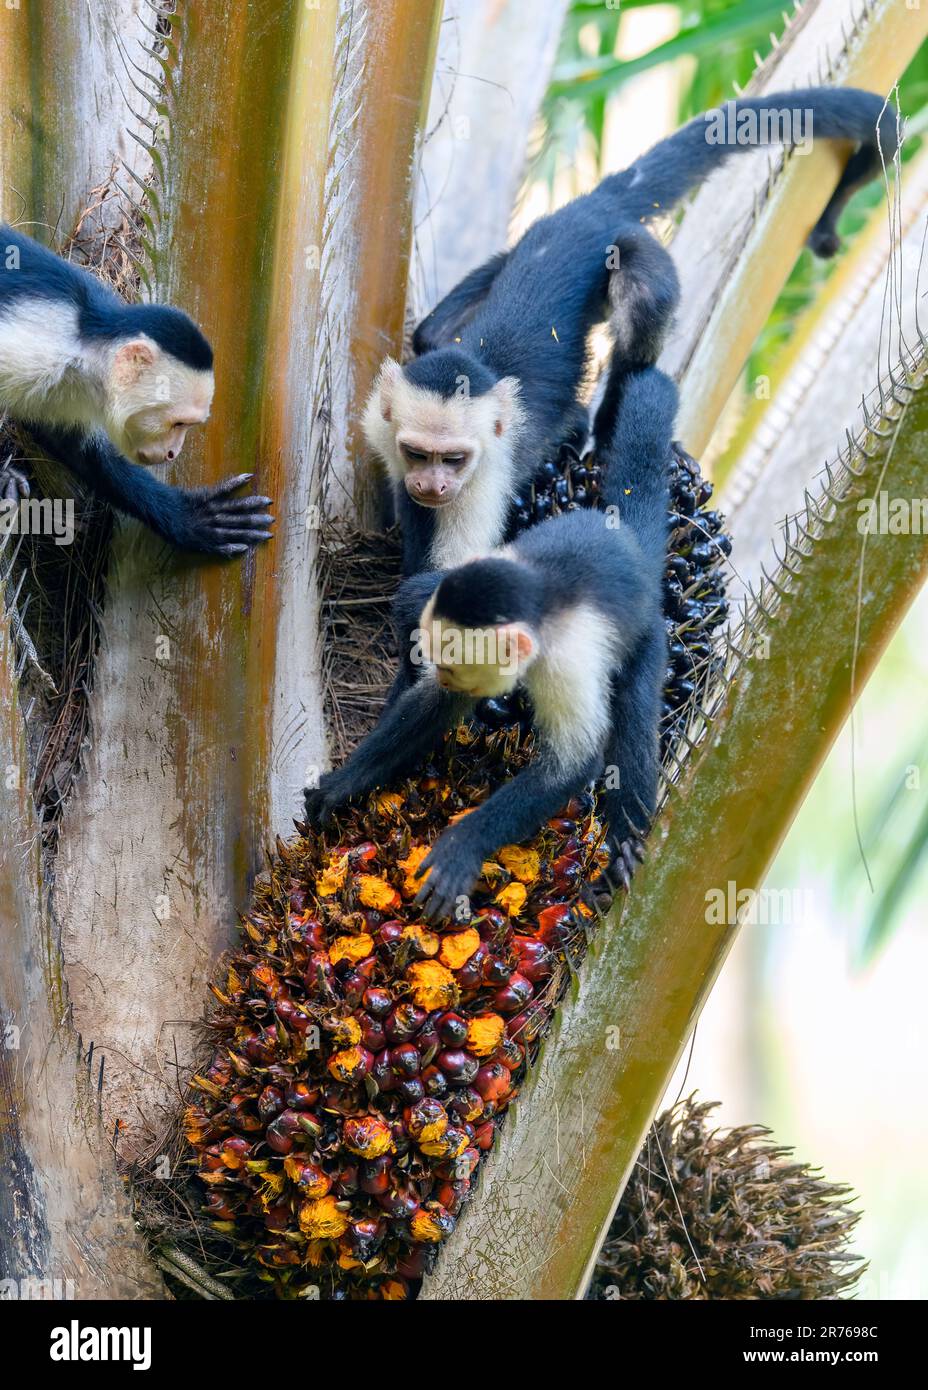 Panamaische Weissgesichter-Kapuziner (Cebus-Imitator), die sich von Früchten ernähren. Foto von der Osa-Halbinsel, Costa Rica. Stockfoto